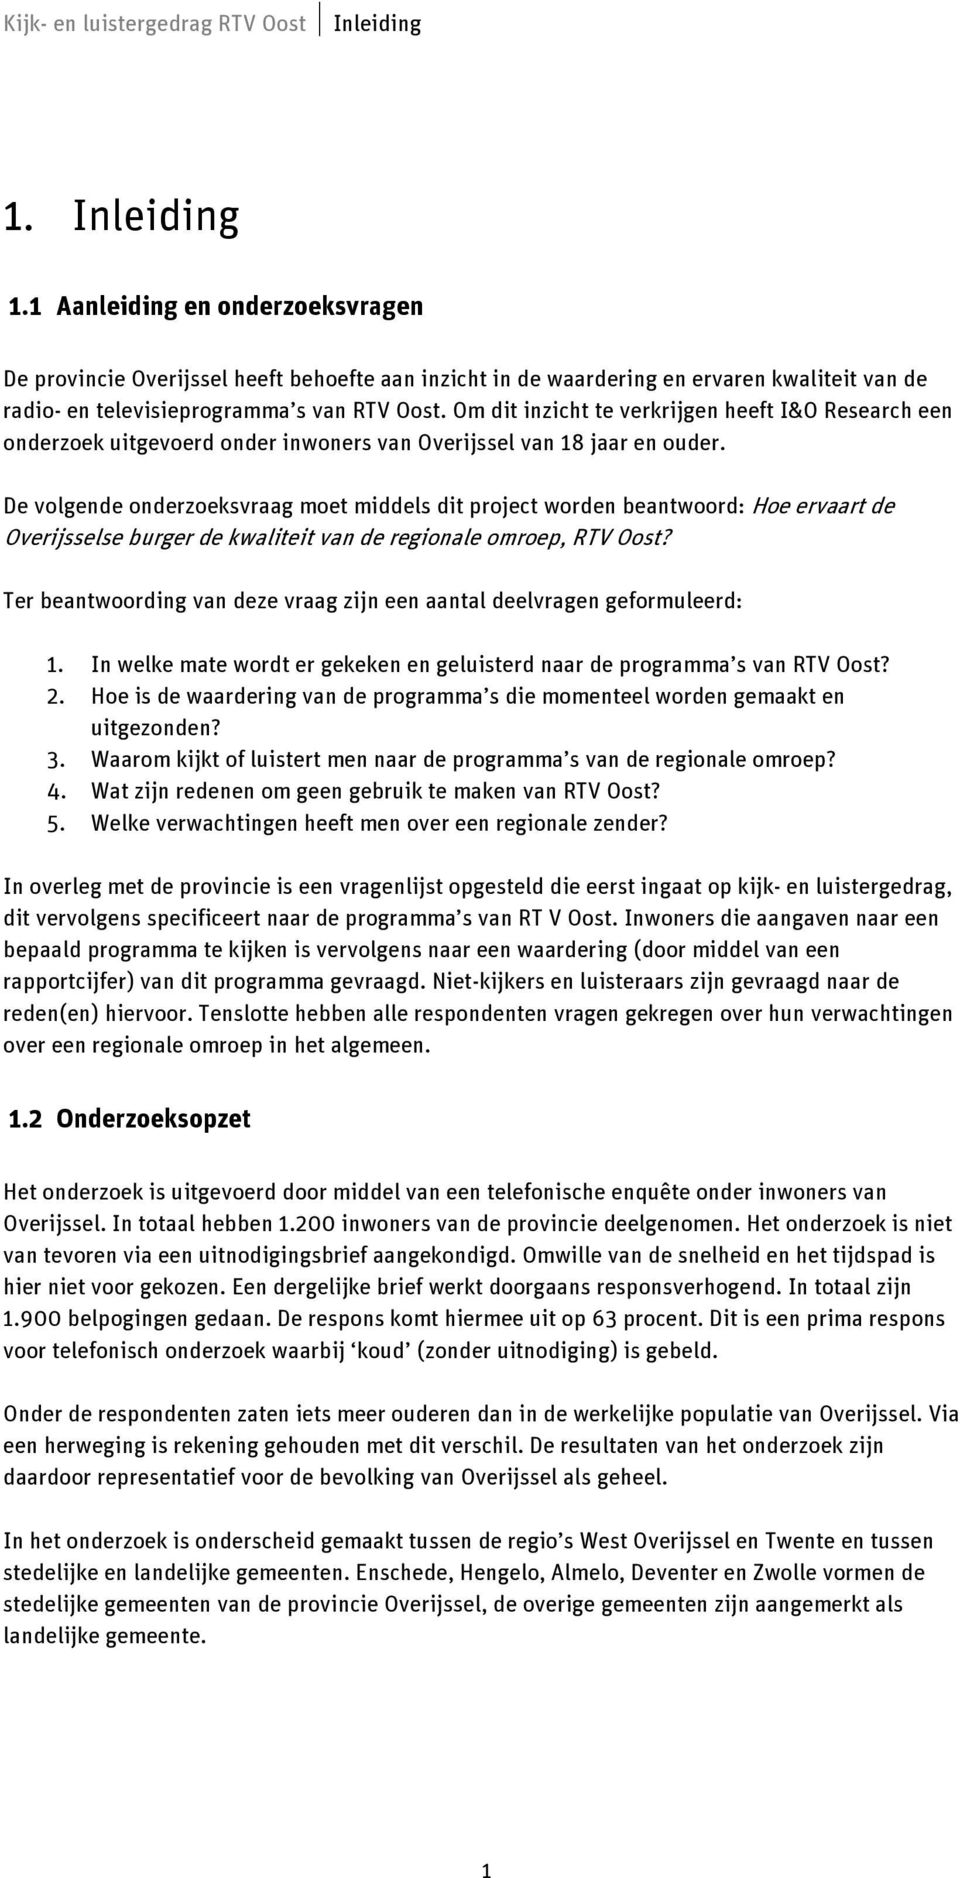 De volgende onderzoeksvraag moet middels dit project worden beantwoord: Hoe ervaart de Overijsselse burger de kwaliteit van de regionale omroep, RTV Oost?